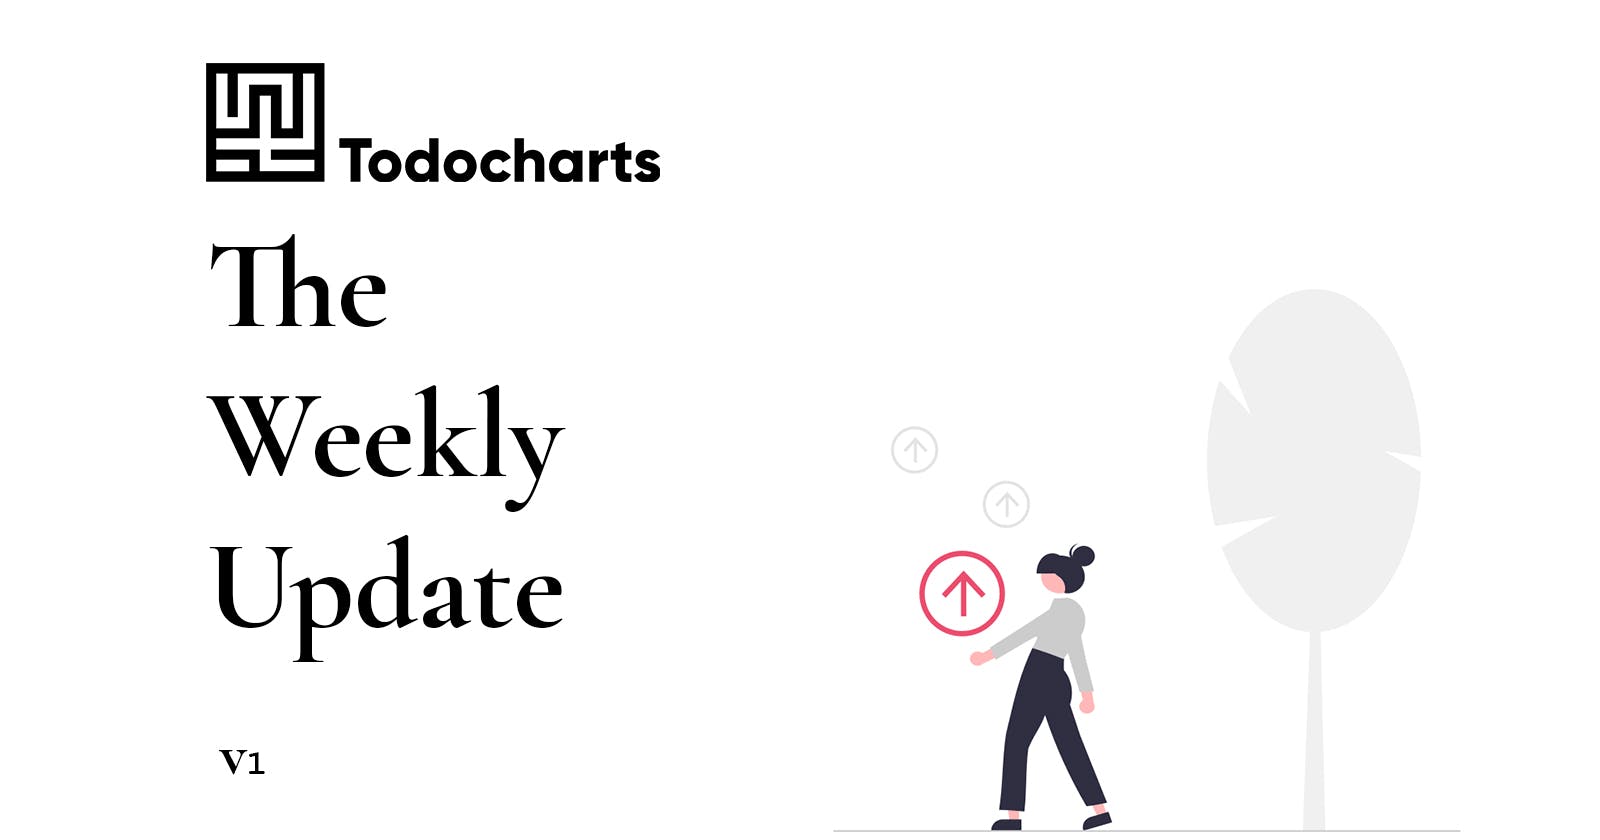 Todocharts Weekly Update 1